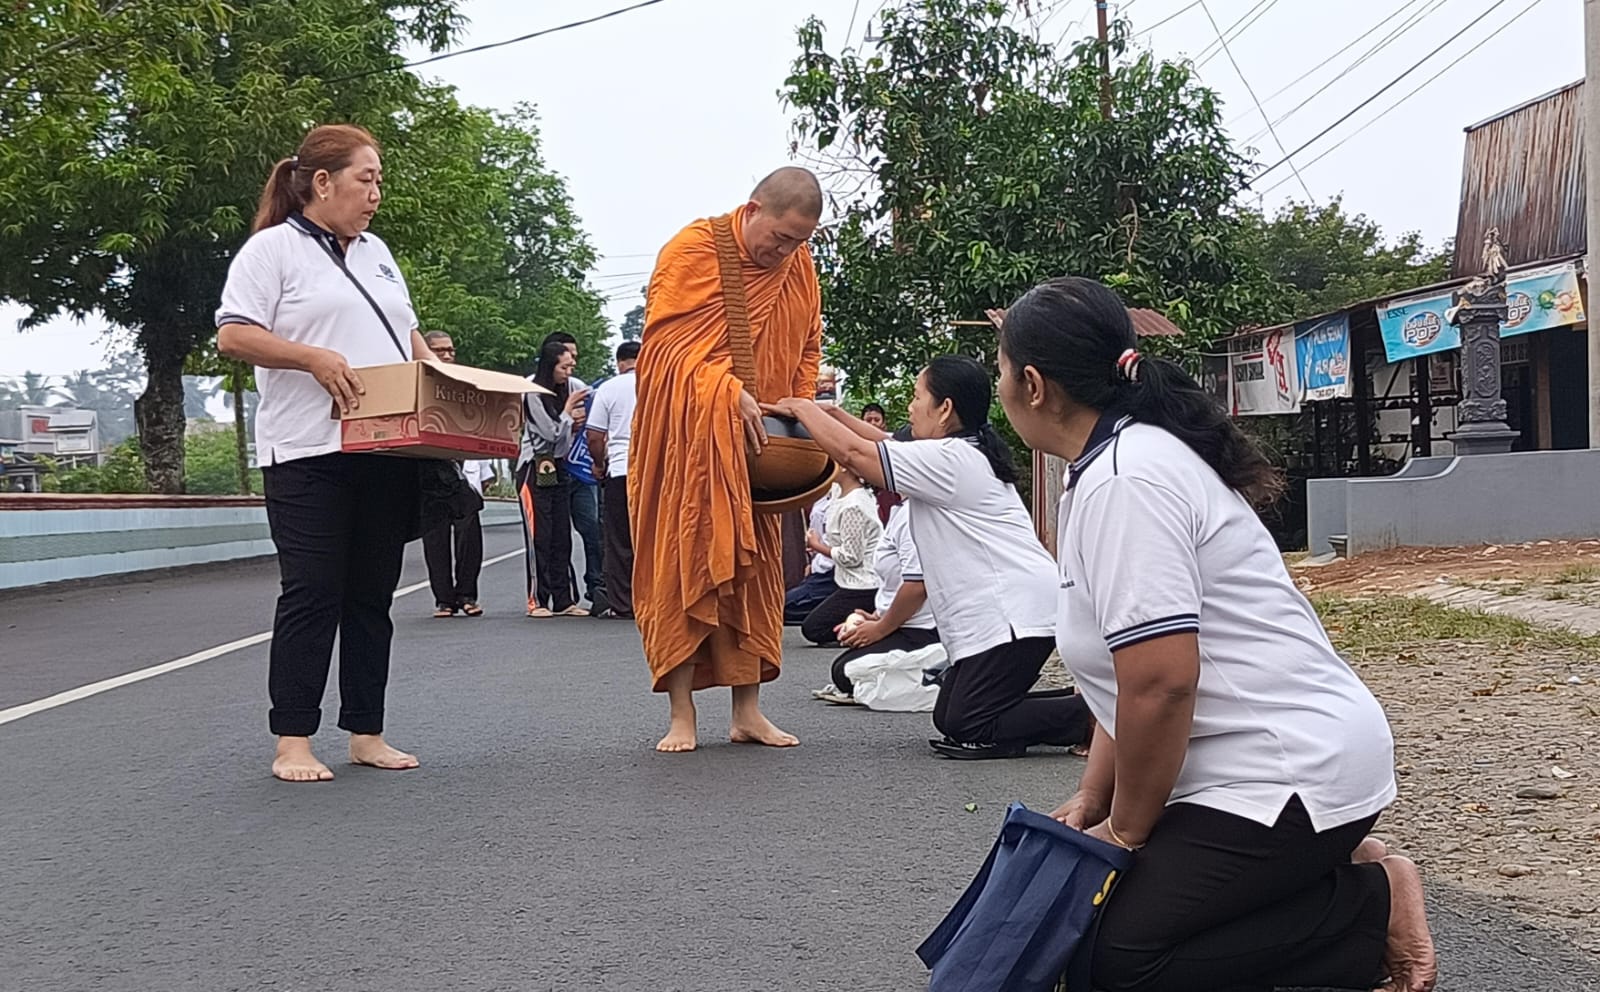 Dukung Moderasi, Umat Lintas Agama di Bengkulu Utara Ikut Bederma Dalam Agenda Pindapata Umat Buddha